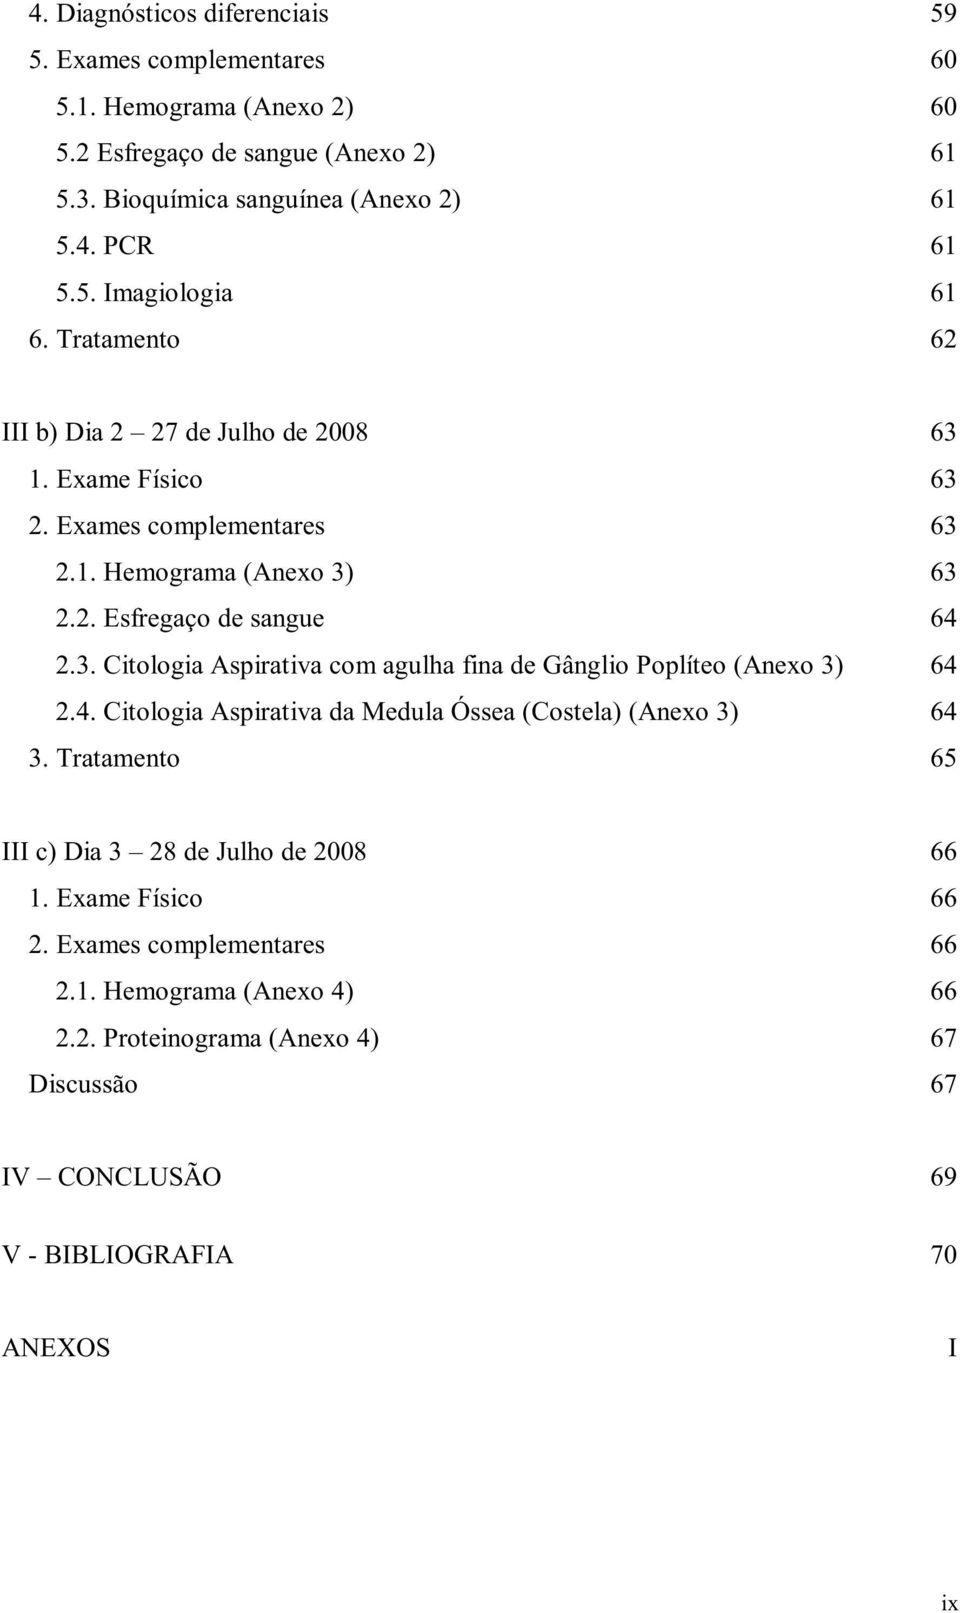 4. Citologia Aspirativa da Medula Óssea (Costela) (Anexo 3) 64 3. Tratamento 65 III c) Dia 3 28 de Julho de 2008 66 1. Exame Físico 66 2. Exames complementares 66 2.1. Hemograma (Anexo 4) 66 2.